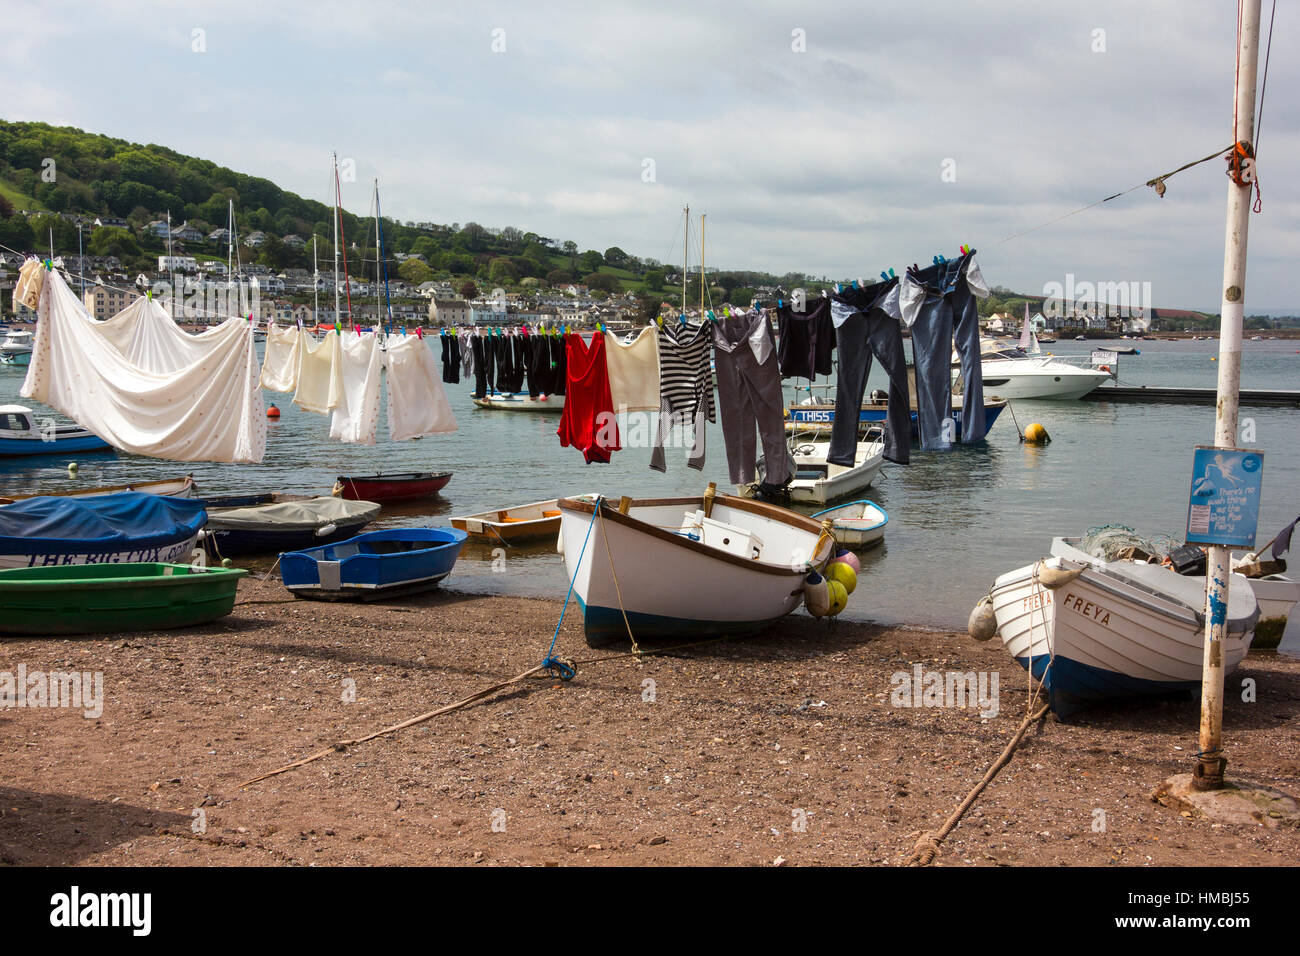 Servizio lavanderia e barche sulla spiaggia di estuario a Teignmouth con barche ormeggiate nel Teign estuario, Teignmouth, Devon, Inghilterra. Foto Stock